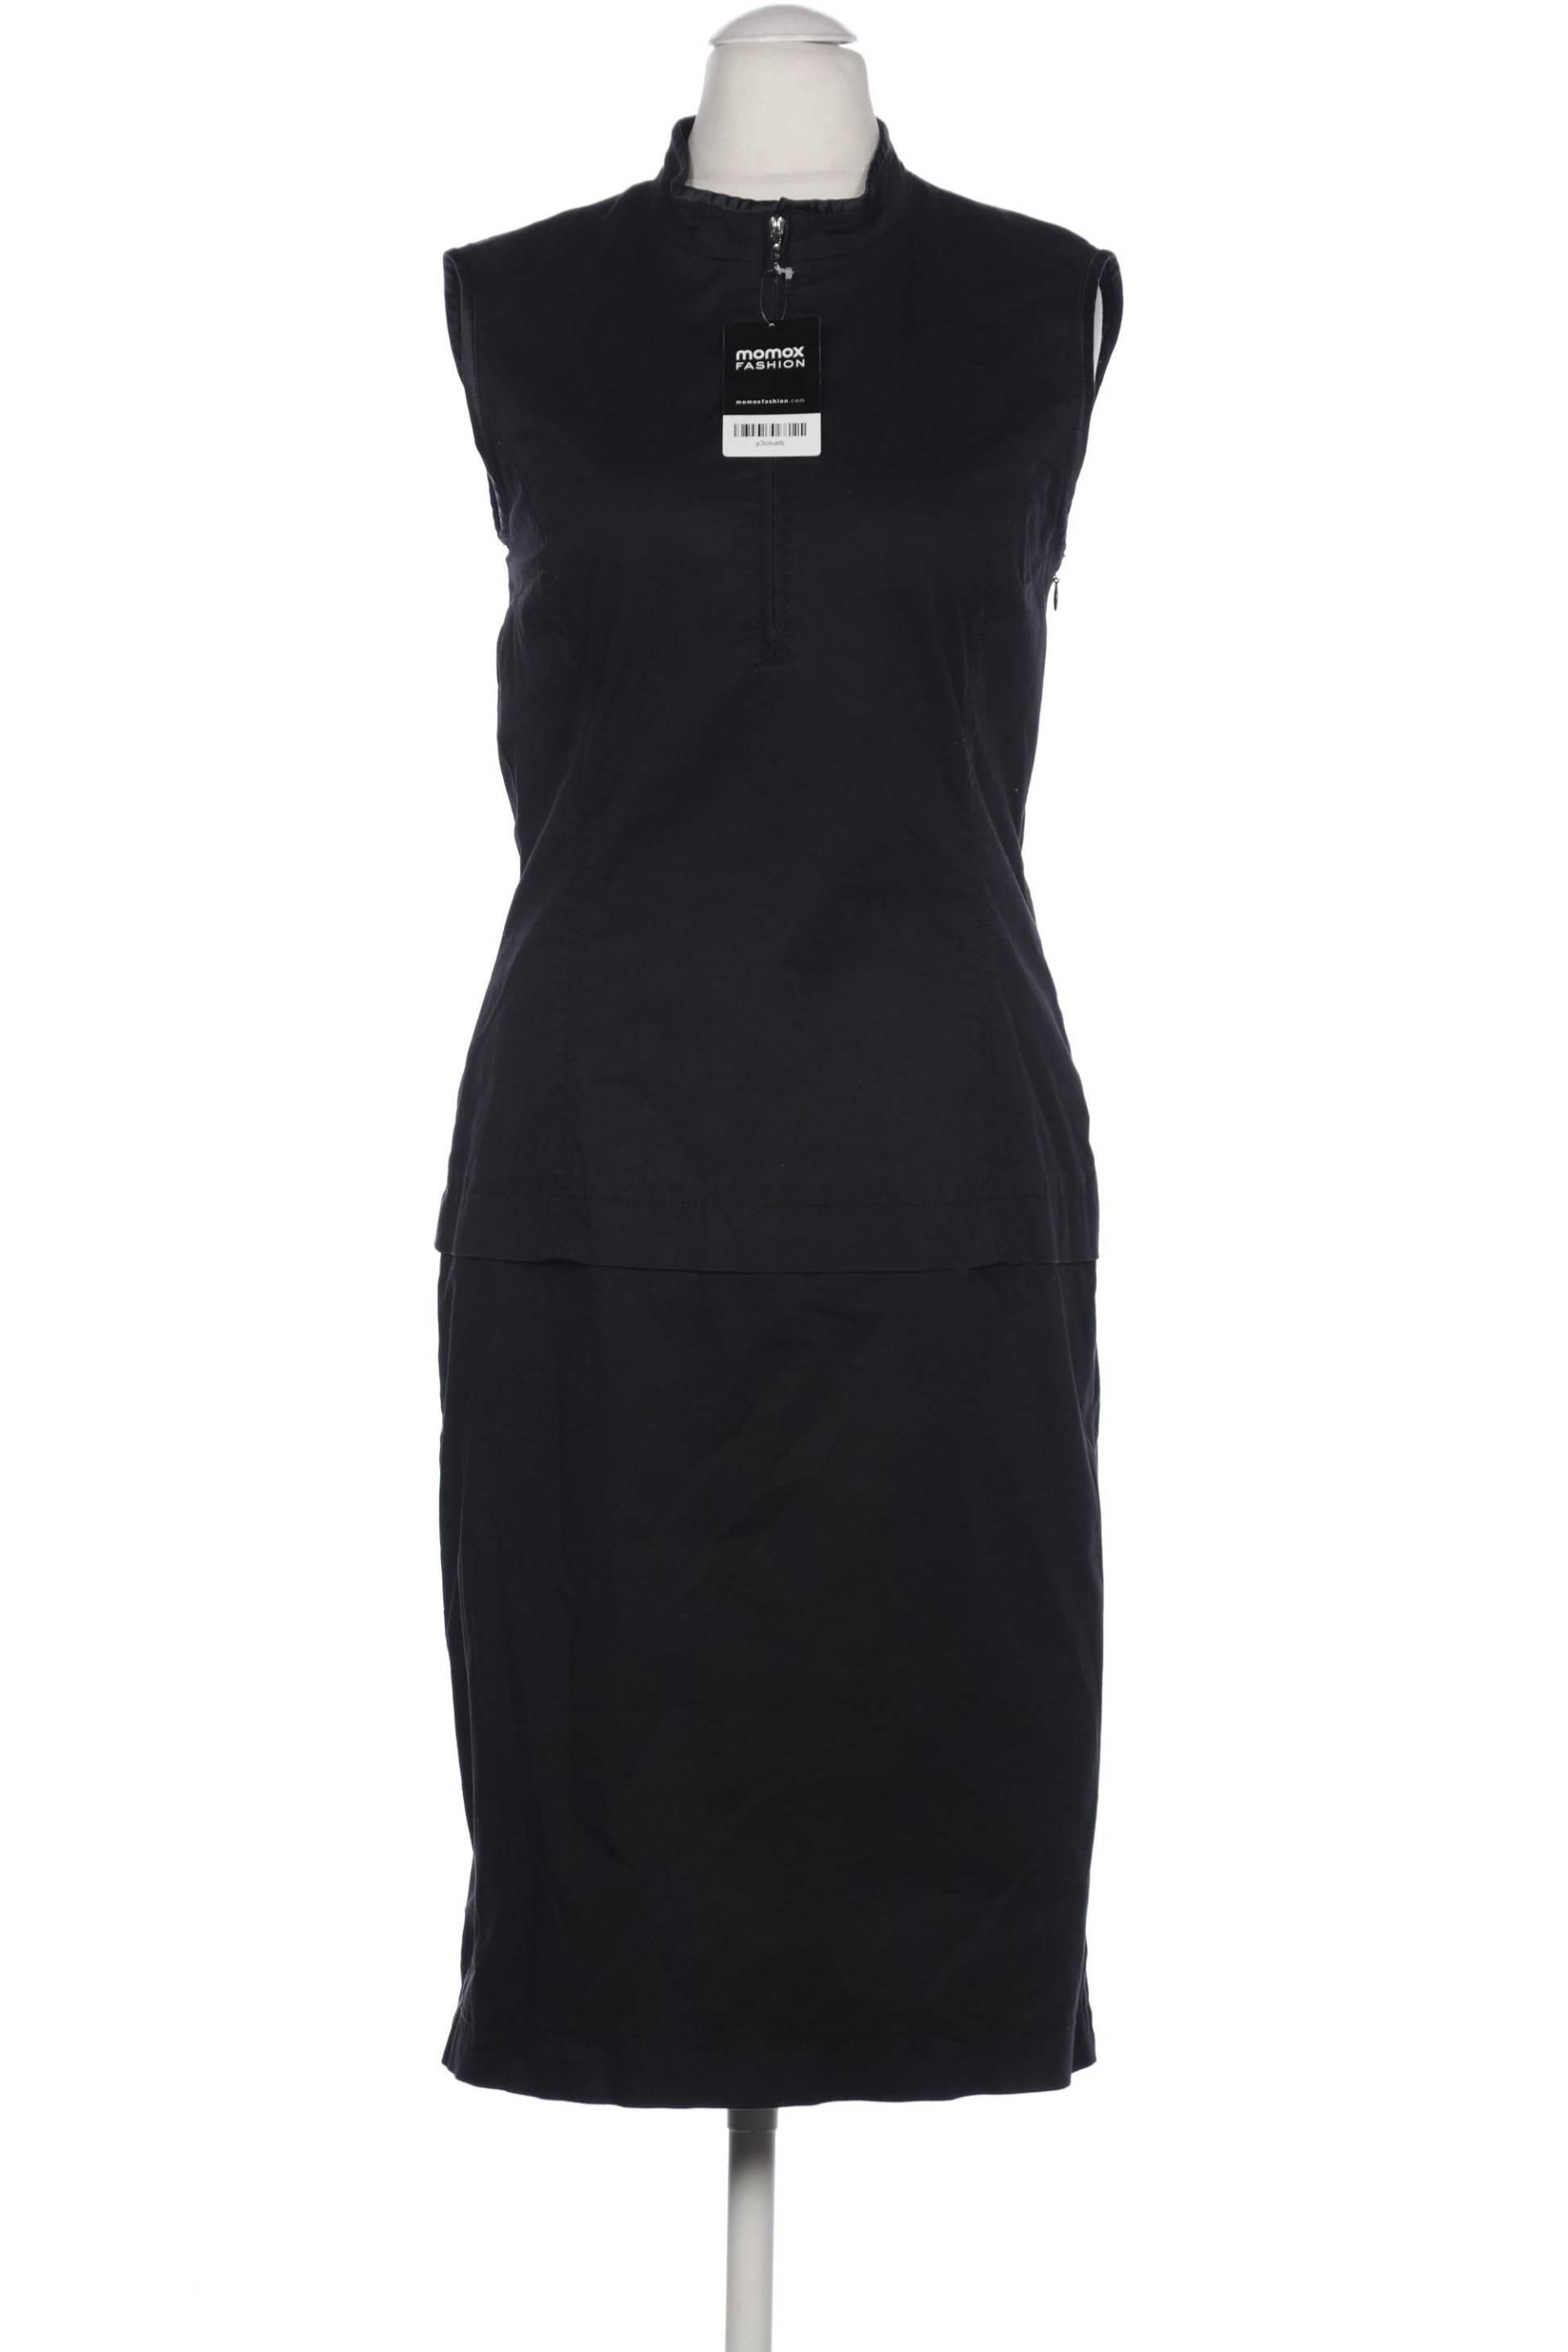 Bogner Damen Kleid, schwarz, Gr. 38 von Bogner